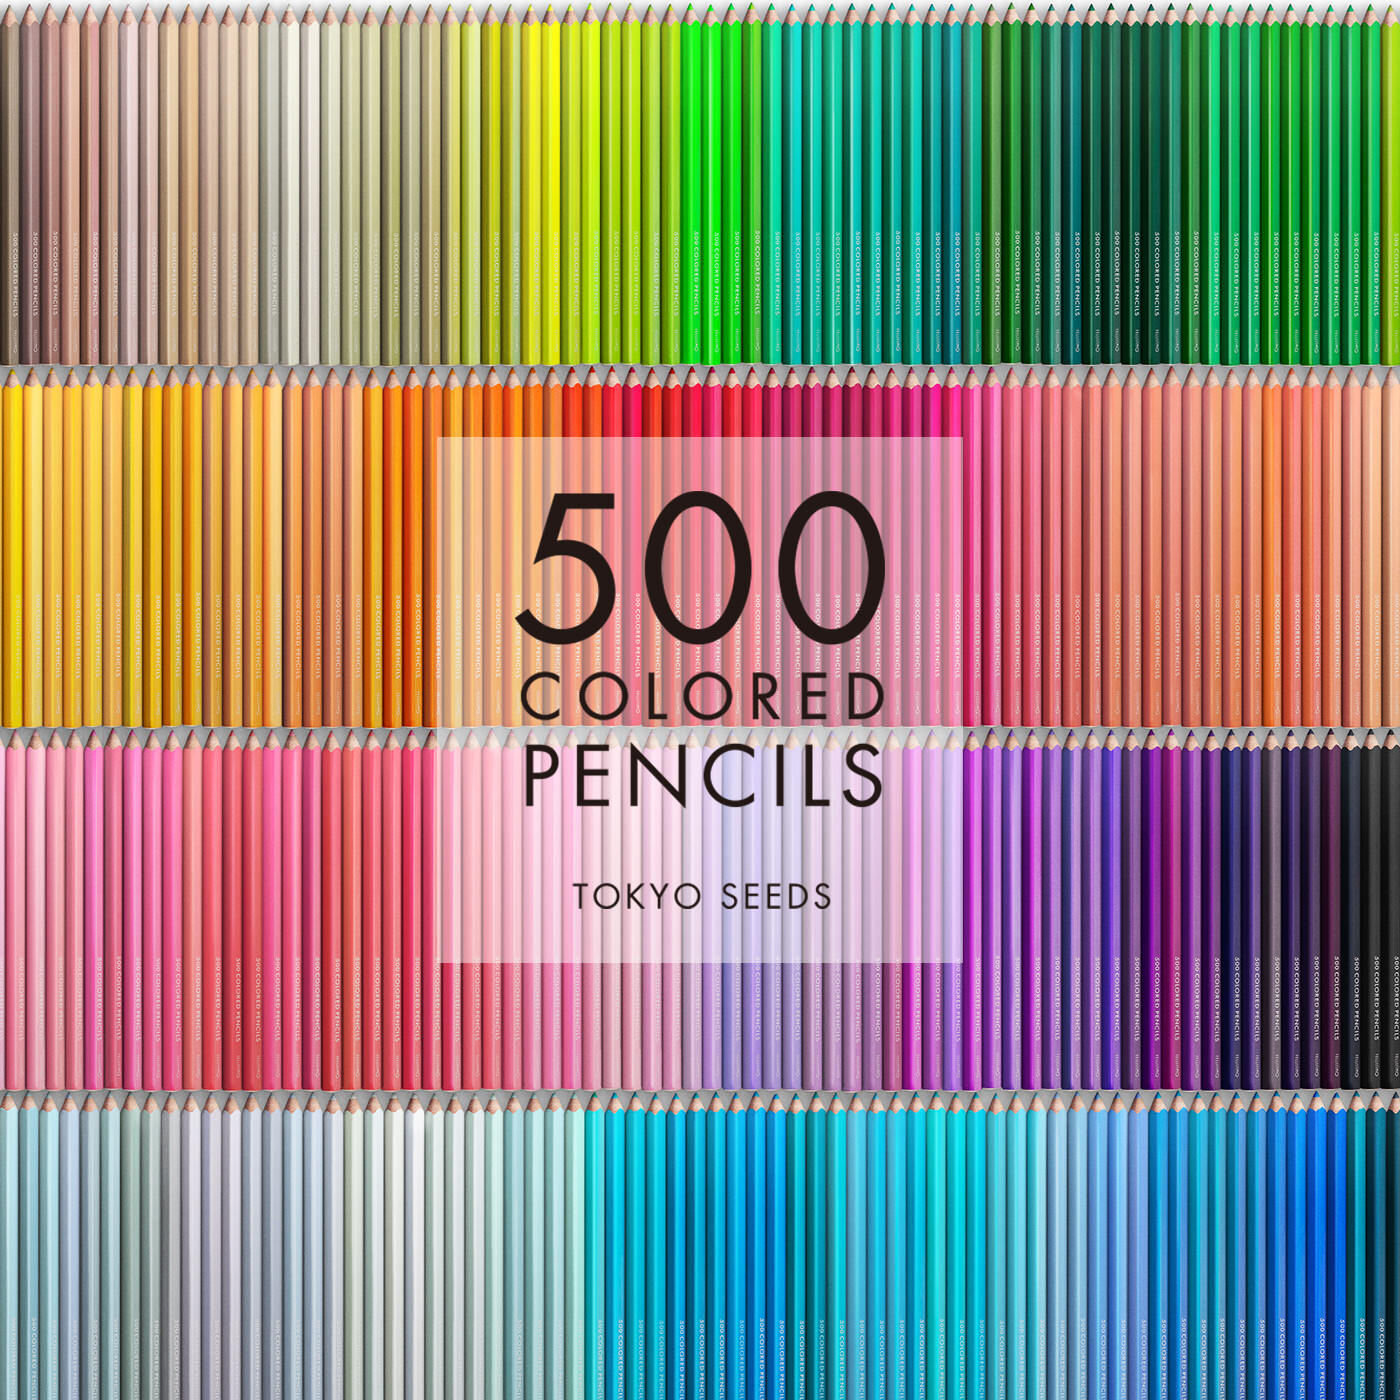 Real Stock|【423/500 GRACEFUL UNISON】500色の色えんぴつ TOKYO SEEDS|1992年、世界初の「500色」という膨大な色数の色えんぴつが誕生して以来、その販売数は発売当初から合わせると、世界55ヵ国10万セット以上。今回、メイド・イン・ジャパンにこだわり、すべてが新しく生まれ変わって登場しました。